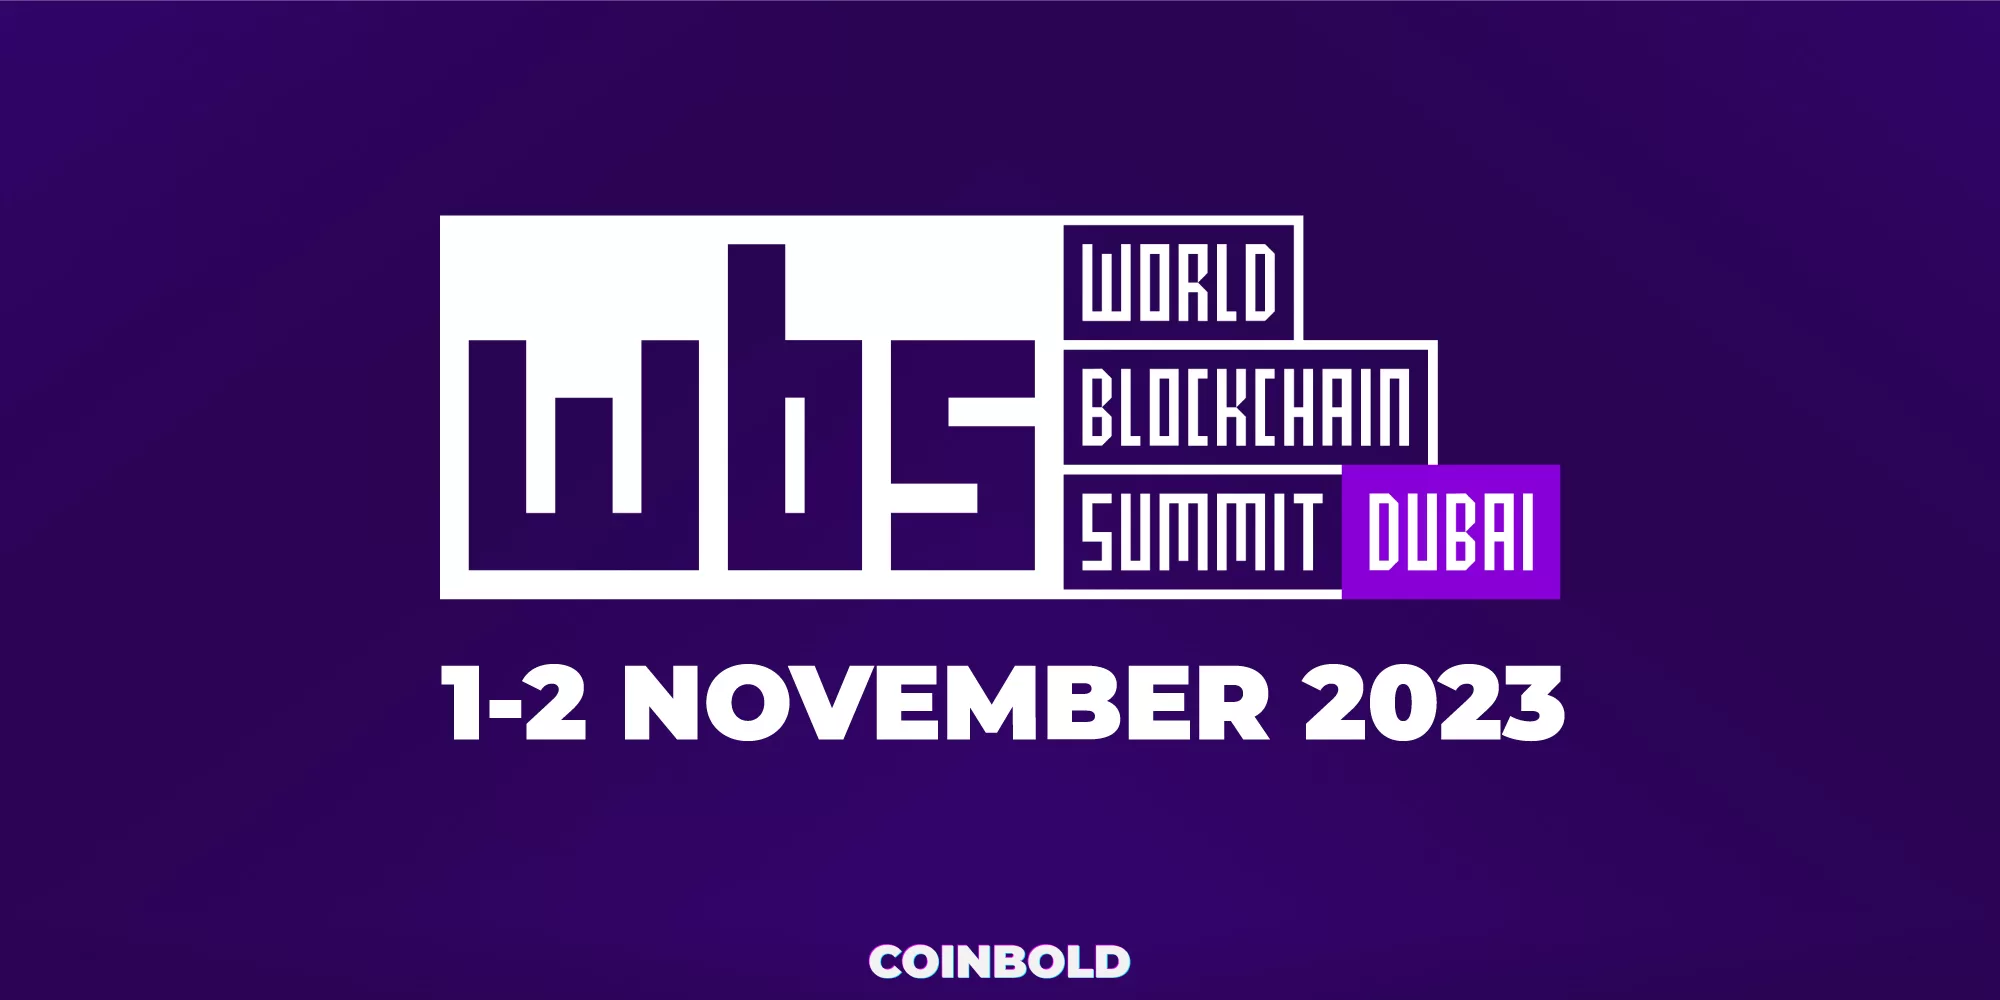 World Blockchain Summit Dubai 2023